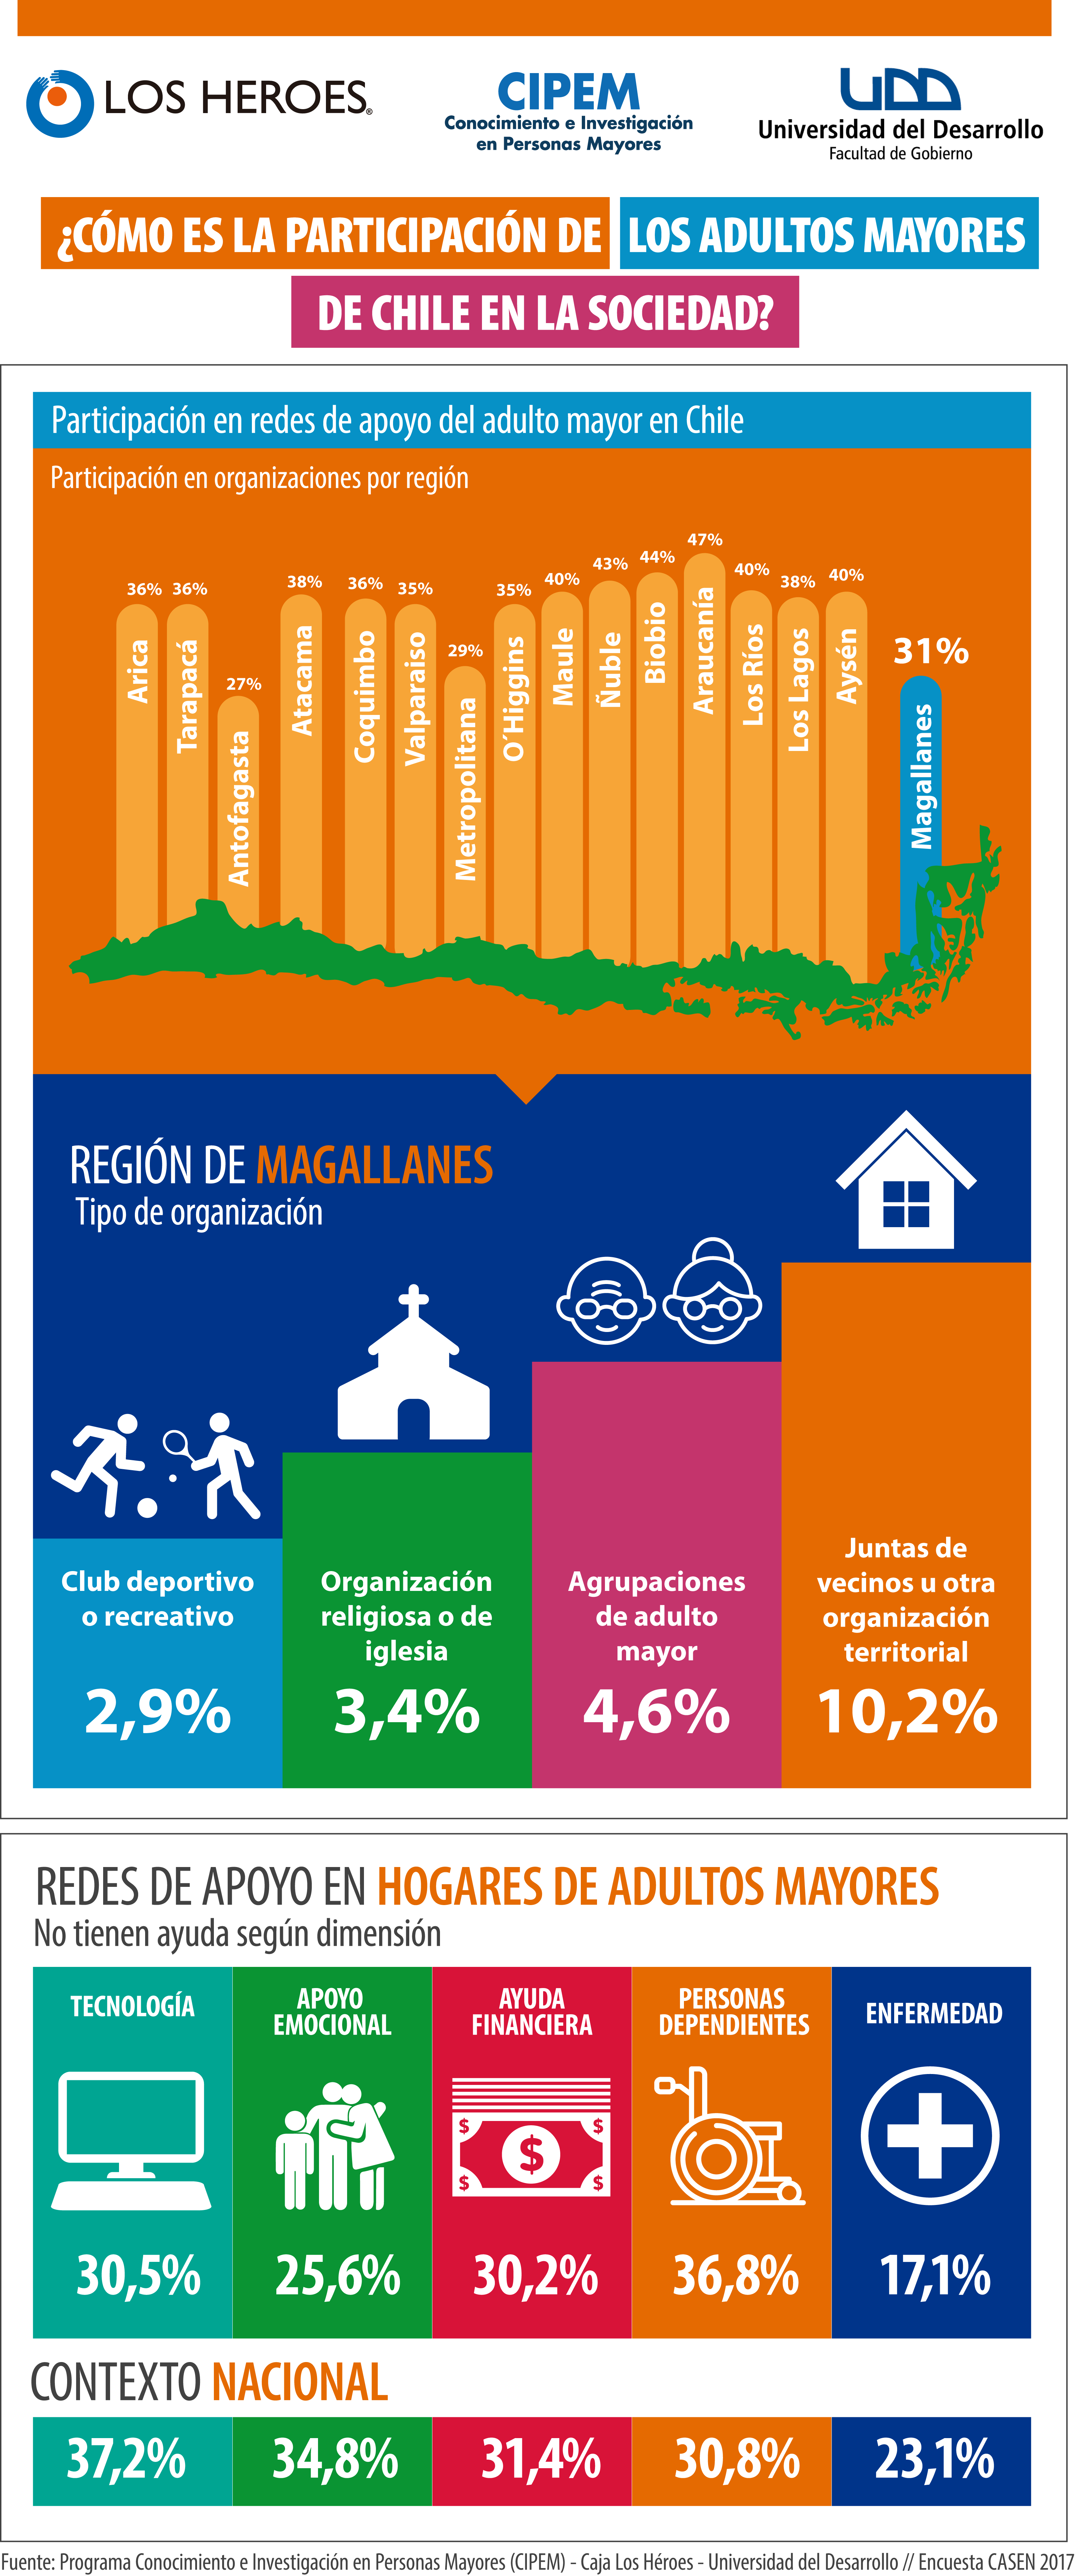 El 31% de los adultos mayores de la Región de Magallanes participa en alguna organización social